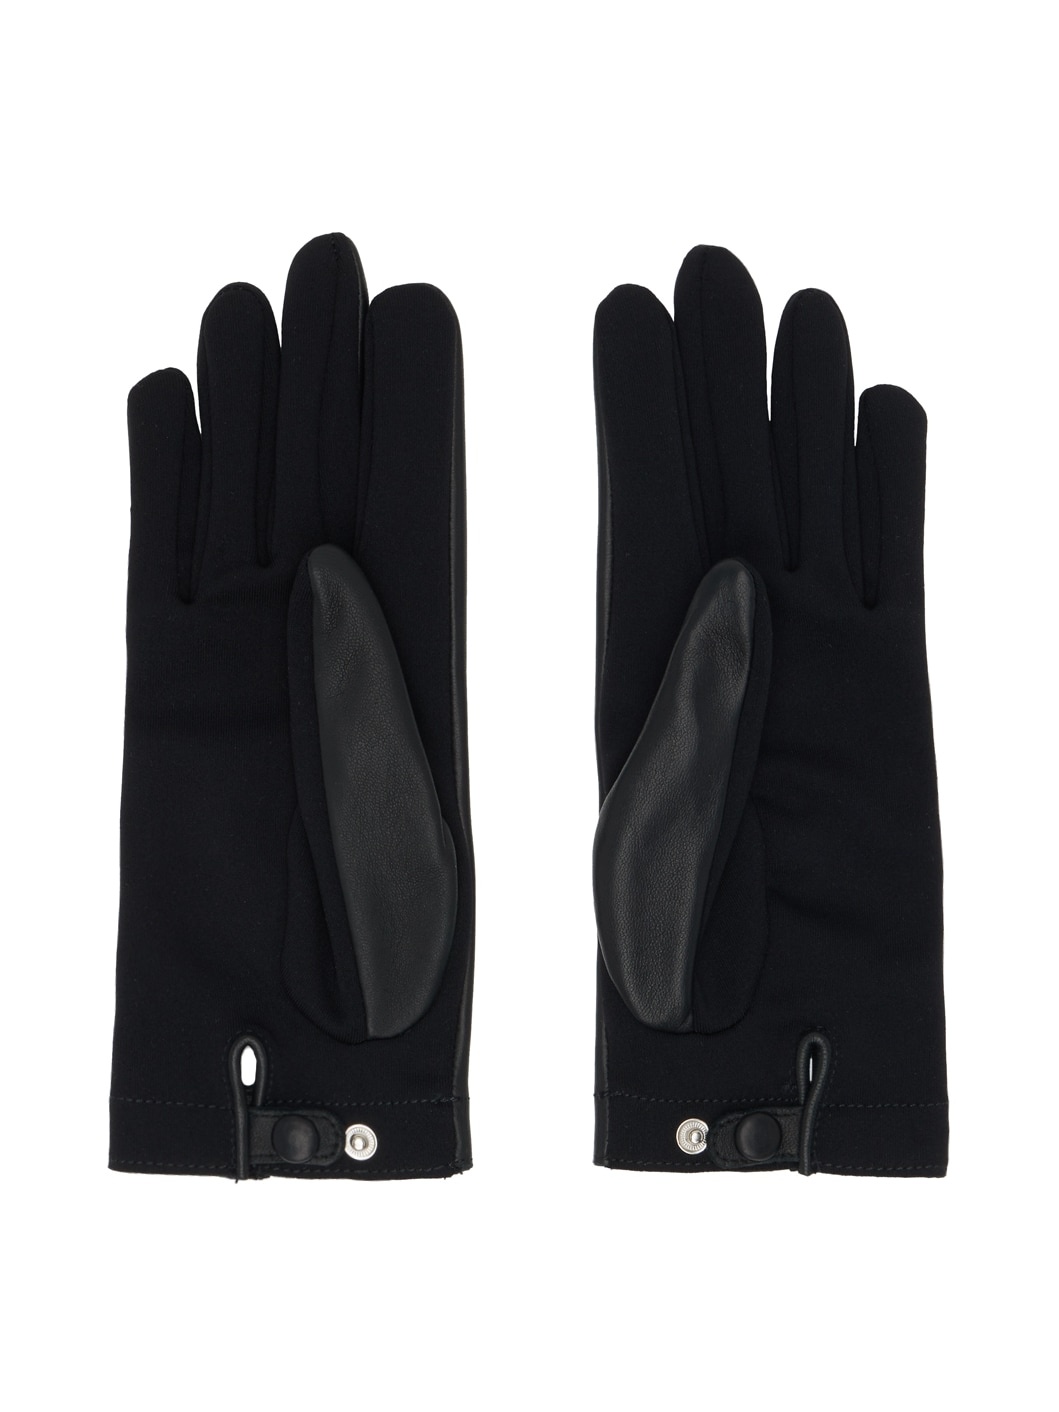 Black Paneled Gloves - 2